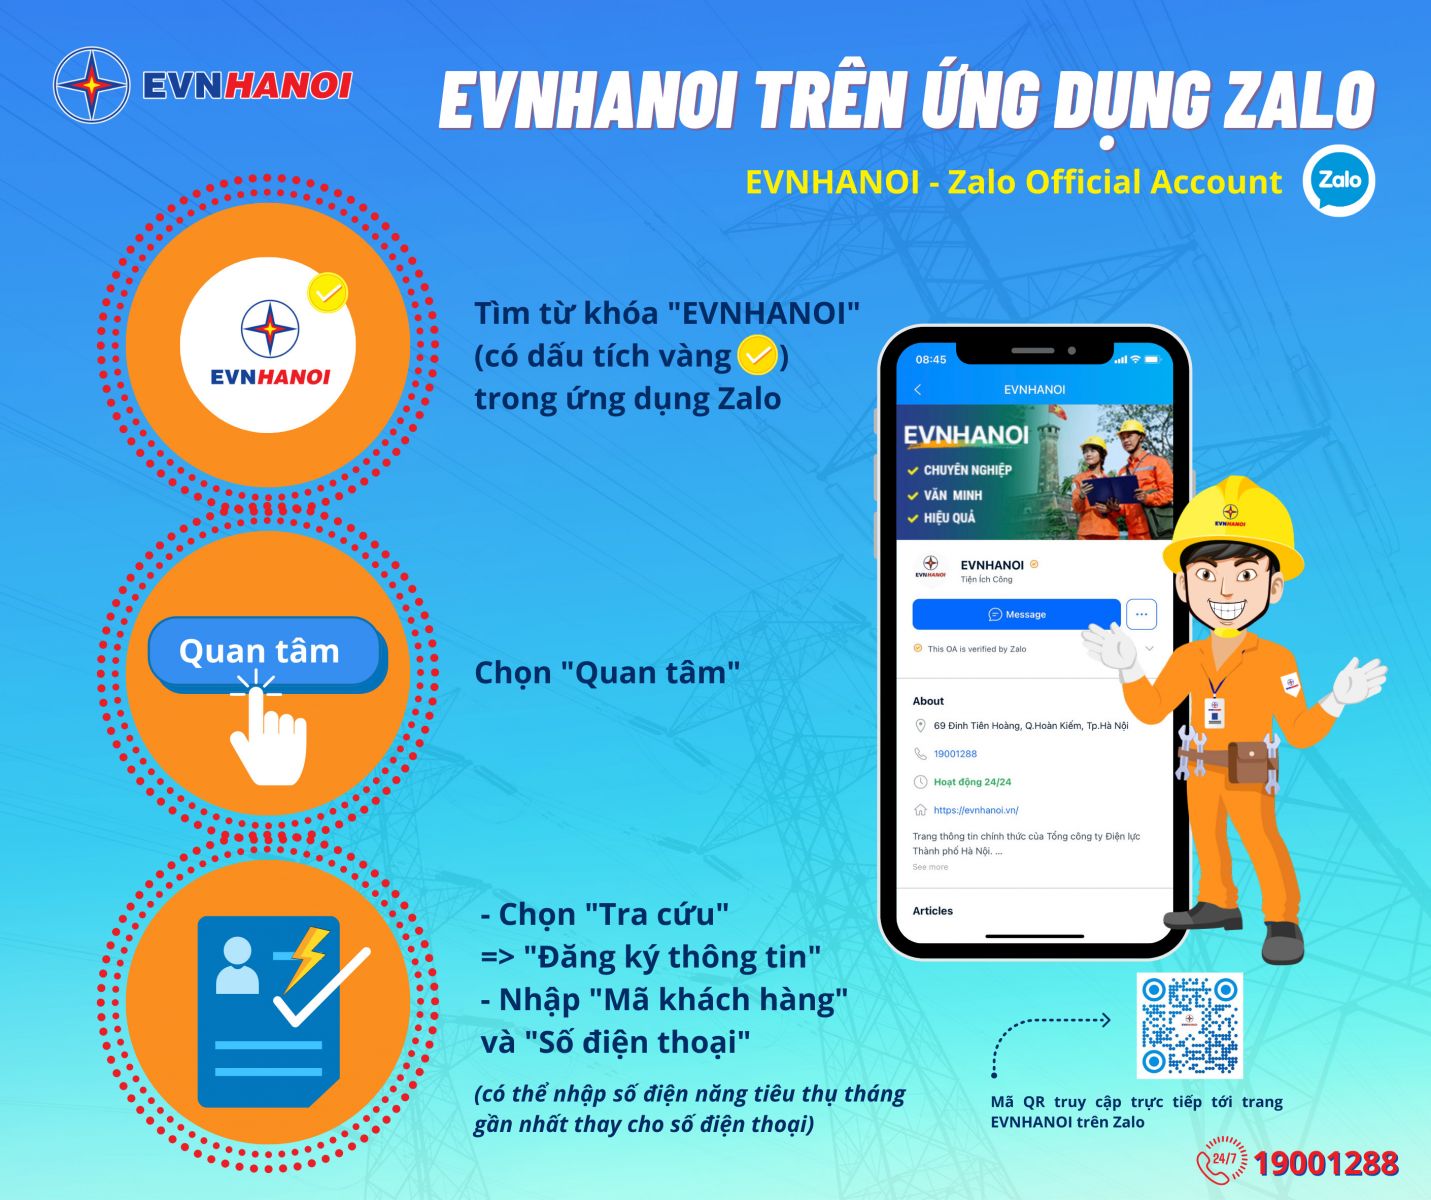 Các bước theo dõi và đăng ký thông tin trên trang EVNHANOI tại ứng dụng Zalo